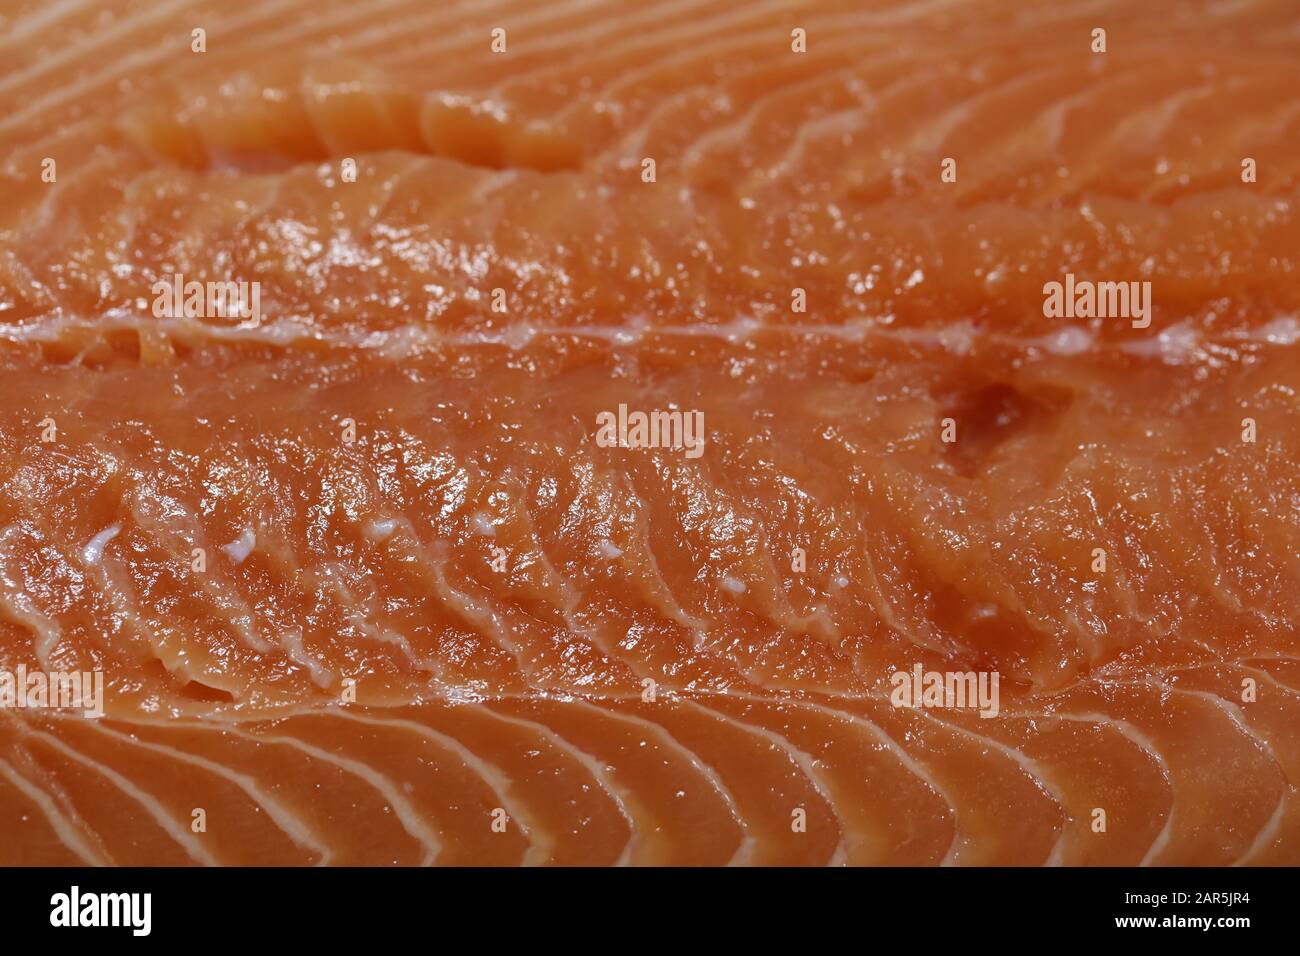 Filet de saumon norvégien dans une clôture. Belle couleur rouge et texture. Préparer un dîner de poisson sain et délicieux. Photo couleur. Banque D'Images